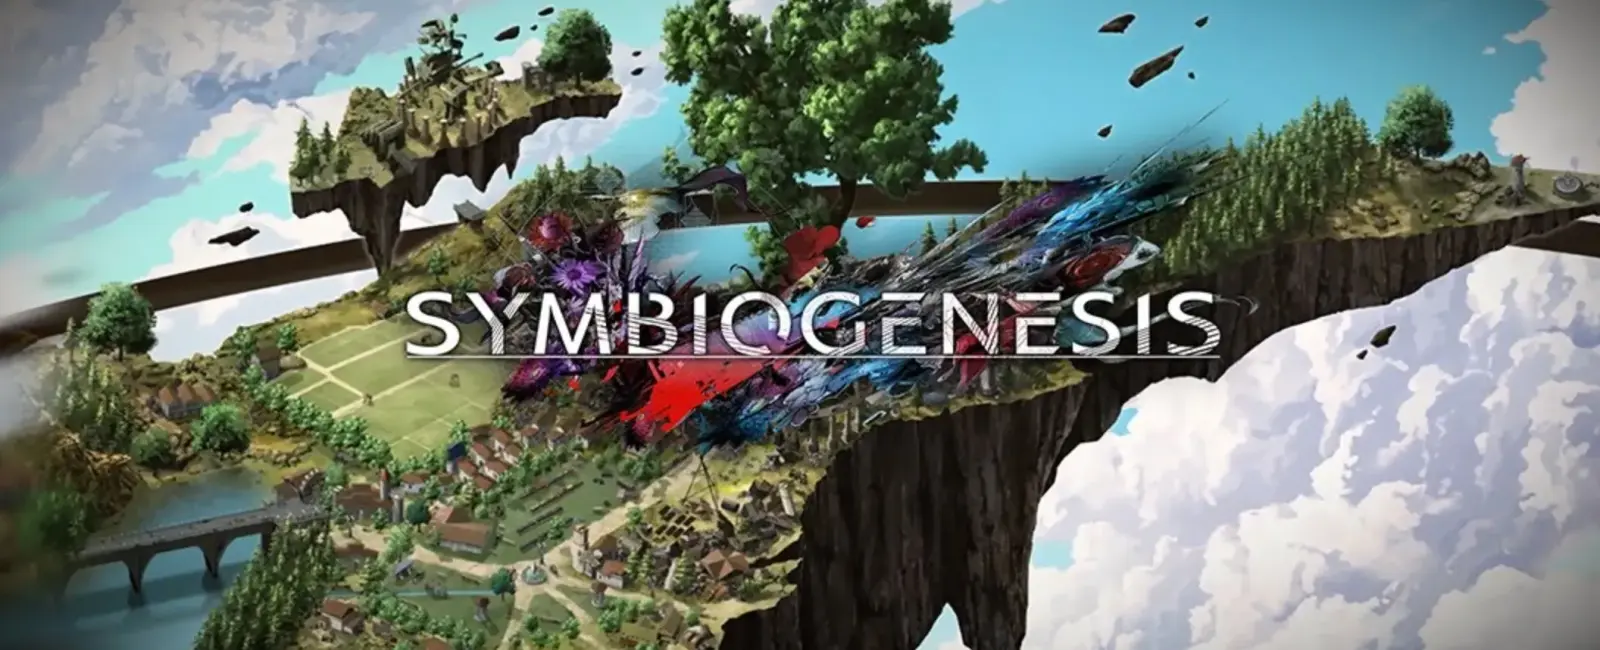 Square Enix une fuerzas con Animoca Brands para potenciar su juego ‘Symbiogenesis’ 